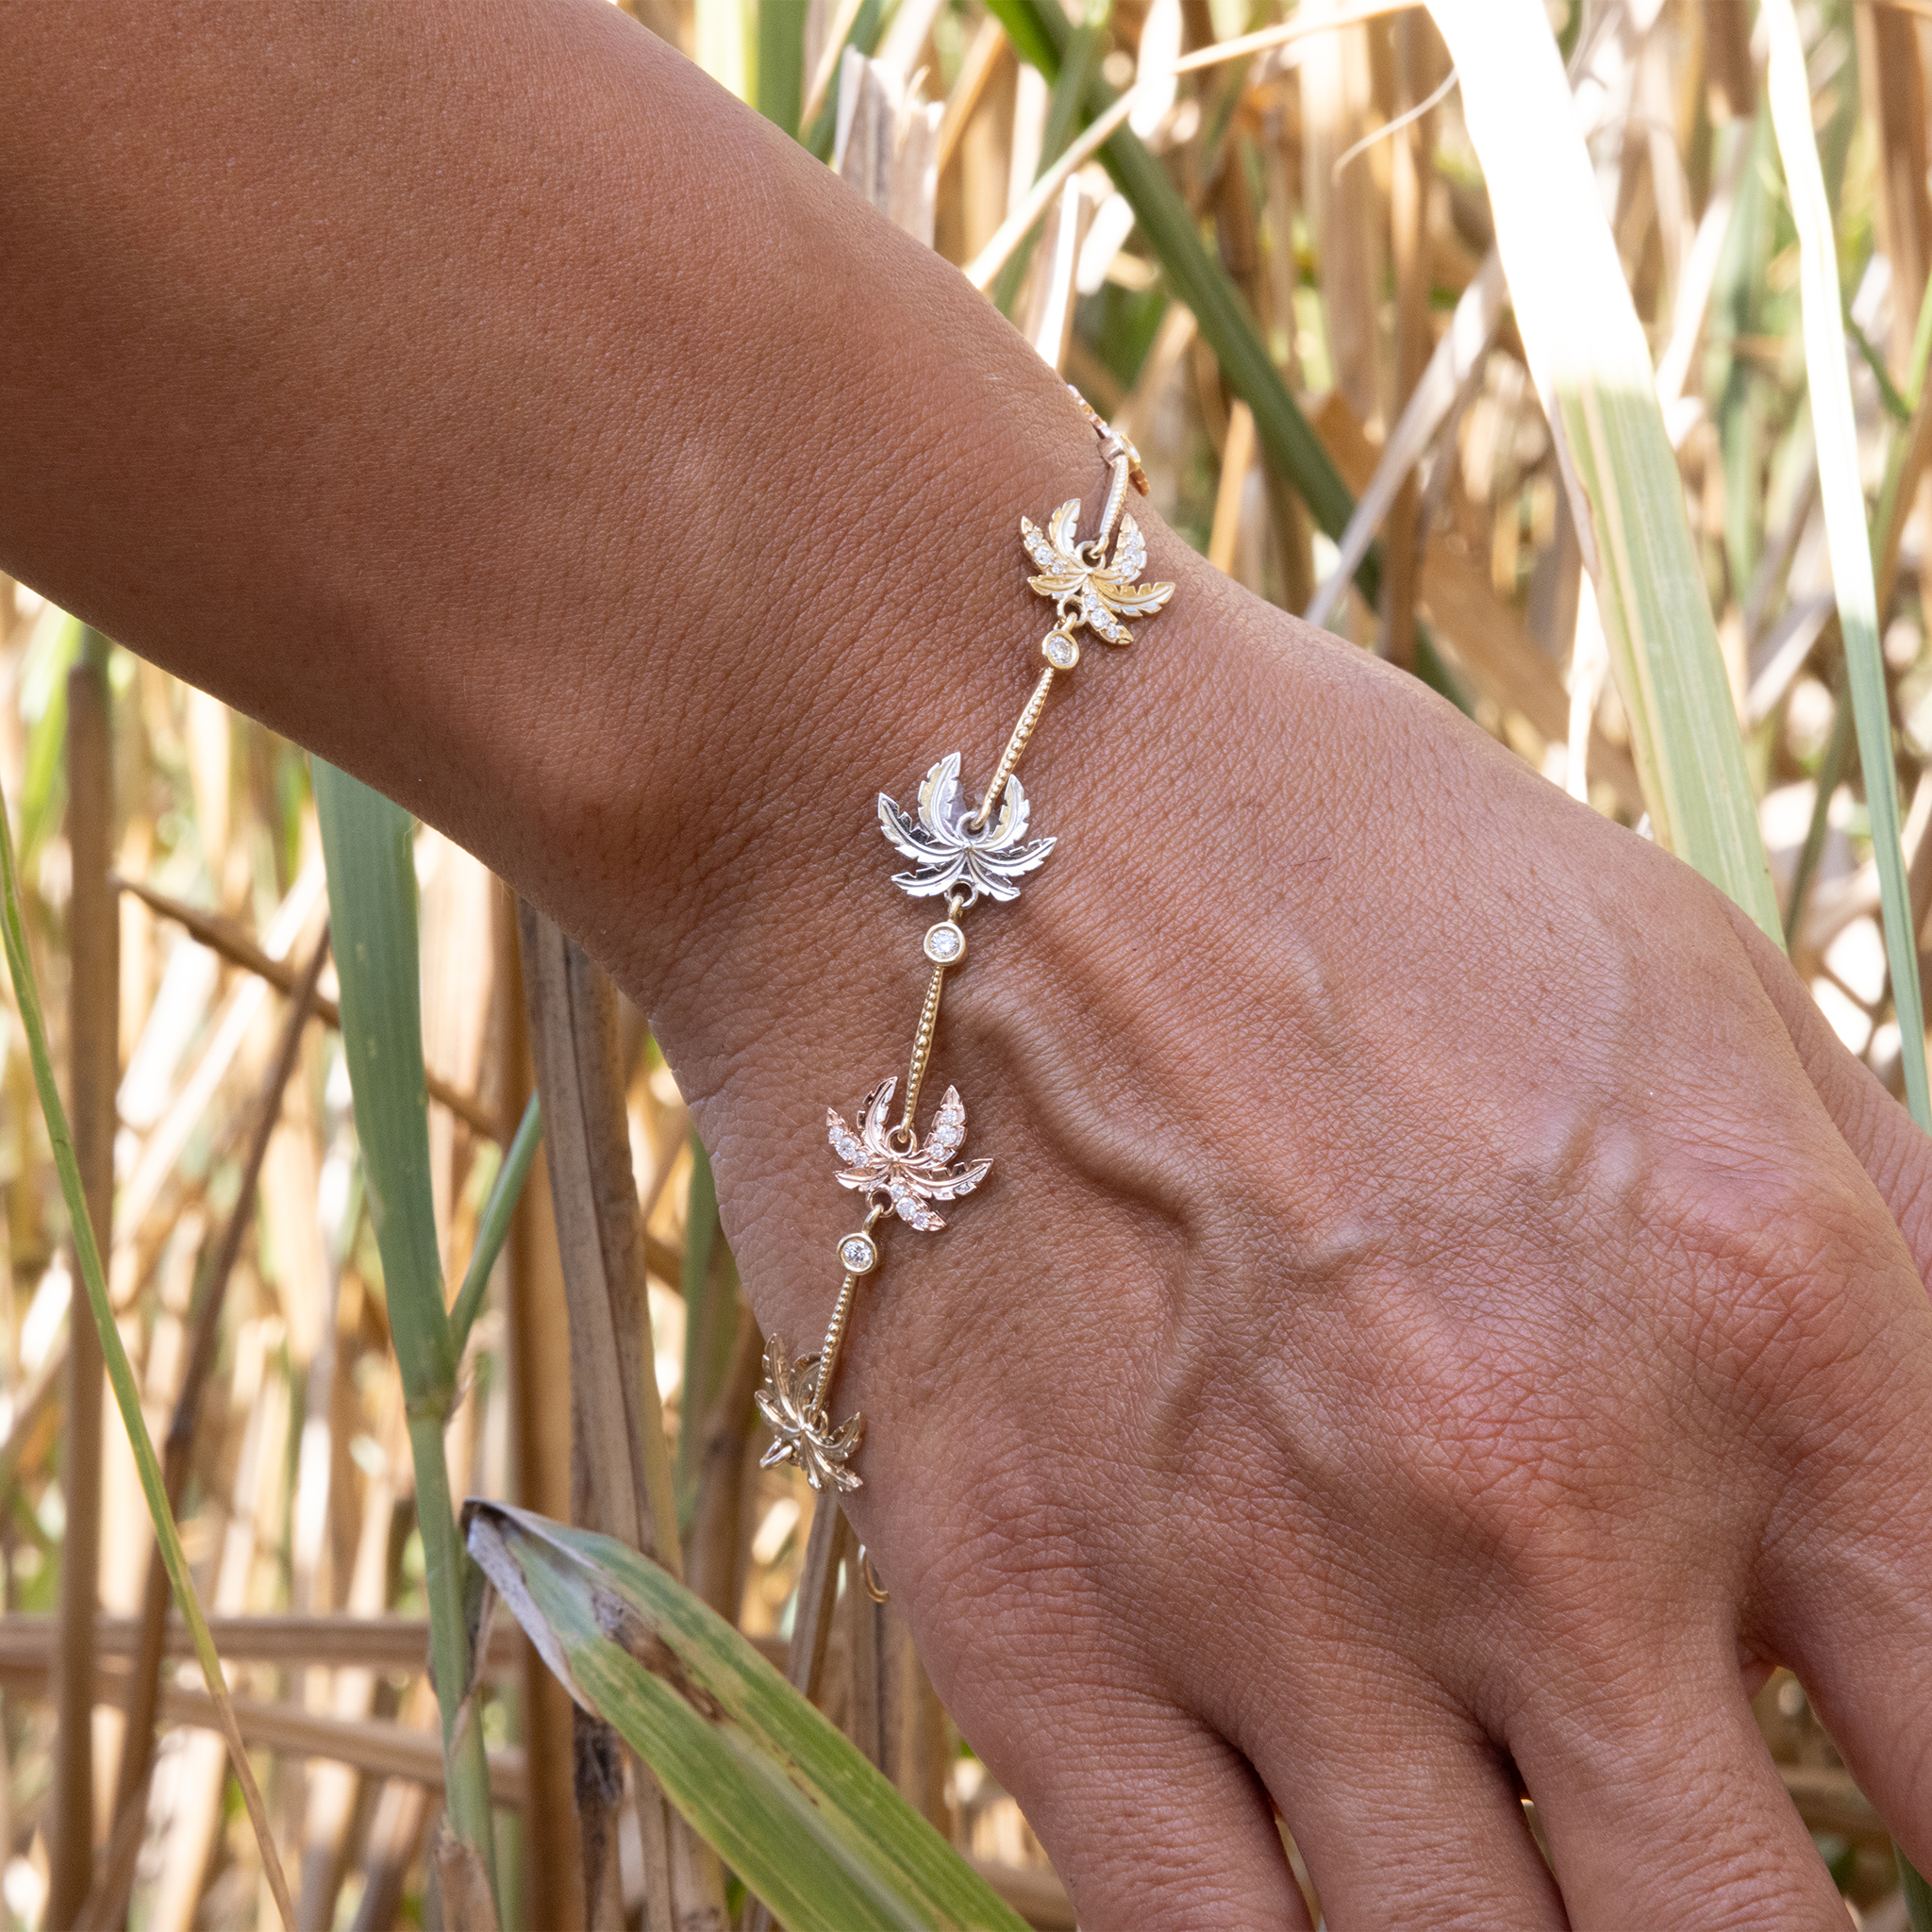 調整可能パラダイス・パラメーター - Tri カラー・ゴールドの Palm Tree Bracelet in Diamonds - Size - サイズ 6.5-8"